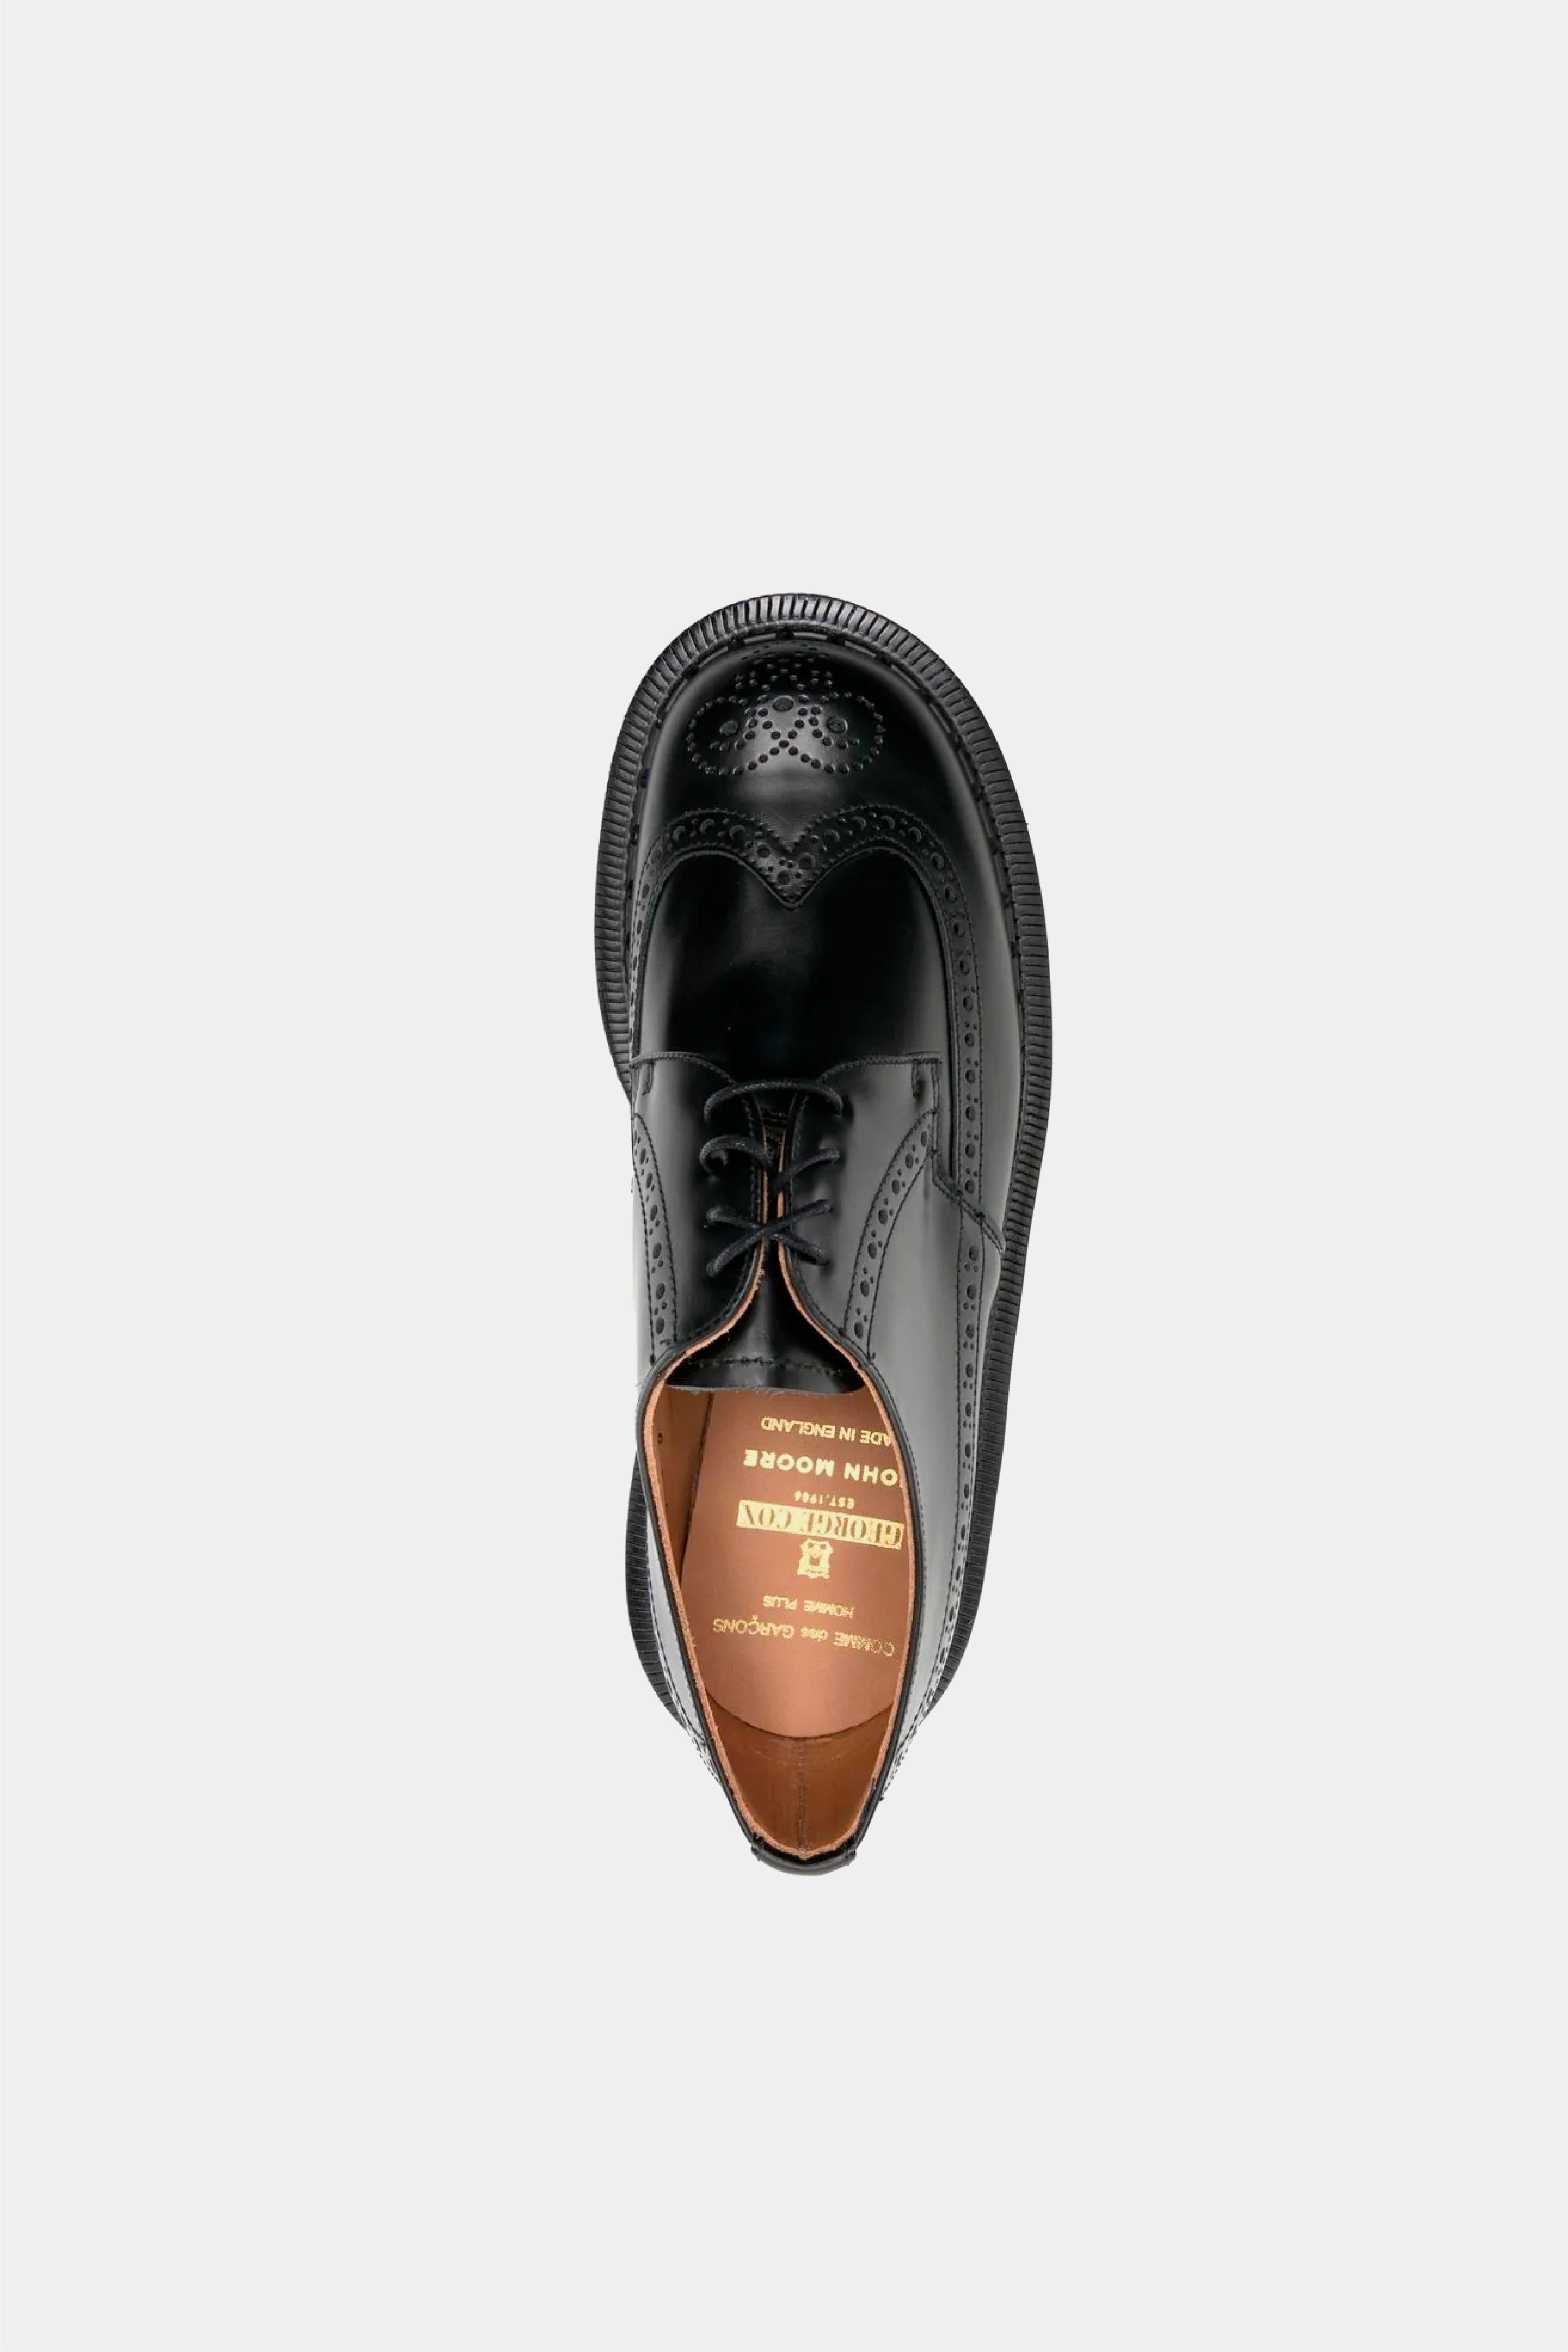 Selectshop FRAME - COMME DES GARÇONS HOMME PLUS George Cox X John Moore Brogue Shoes Footwear Concept Store Dubai